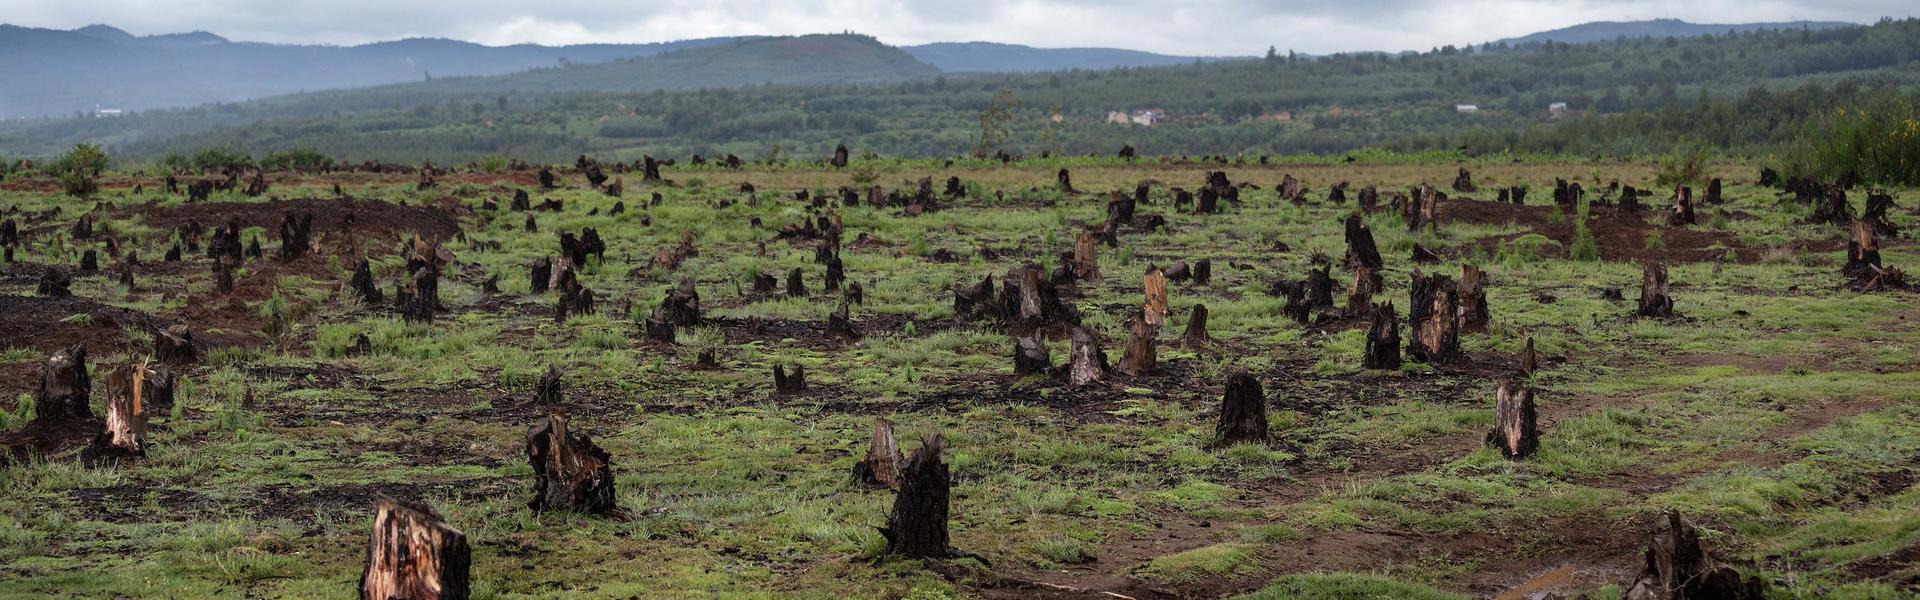 Avskoging på Madagaskar. 